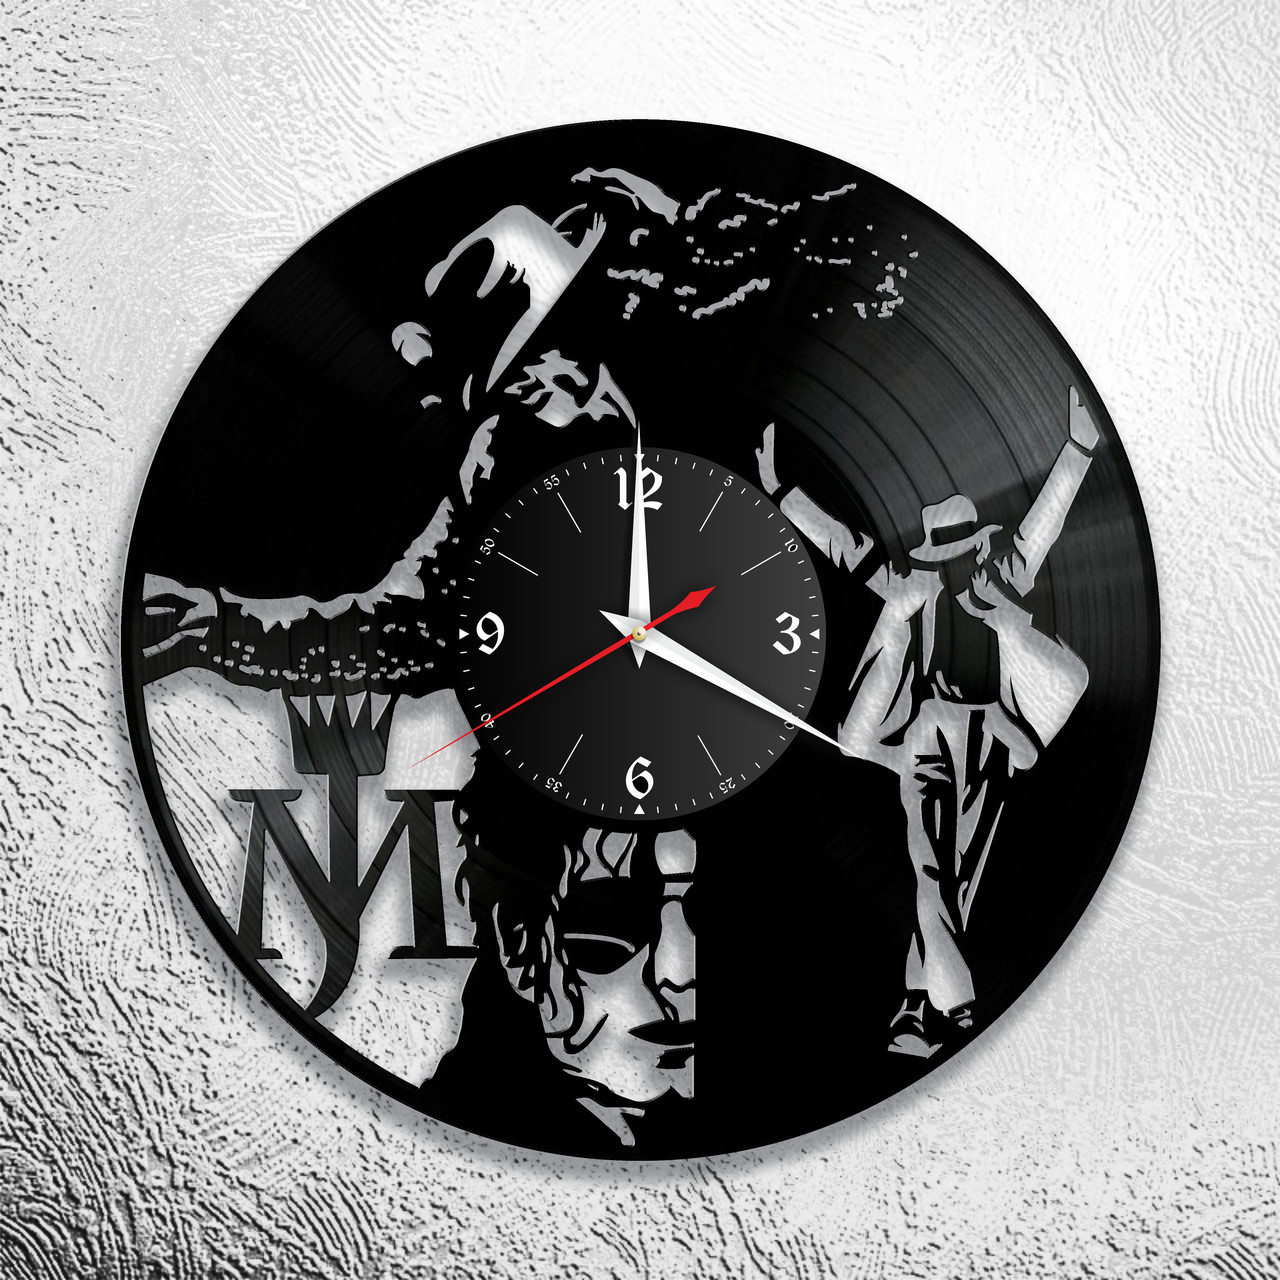 Оригинальные часы из виниловых пластинок "Майкл Джексон" версия 8